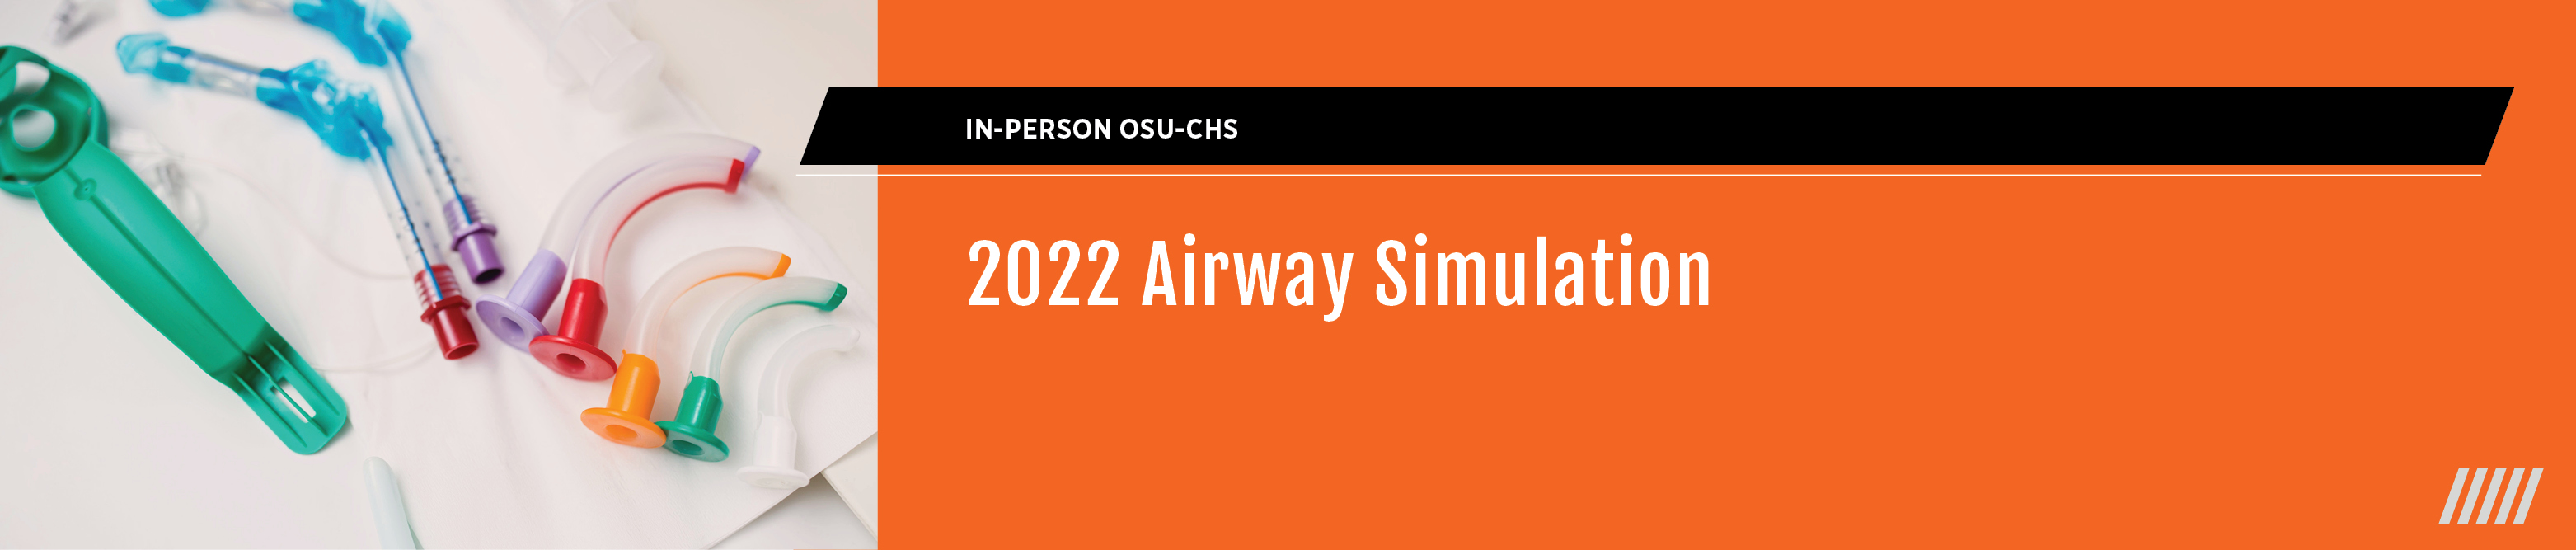 2022 Airway Simulation Banner